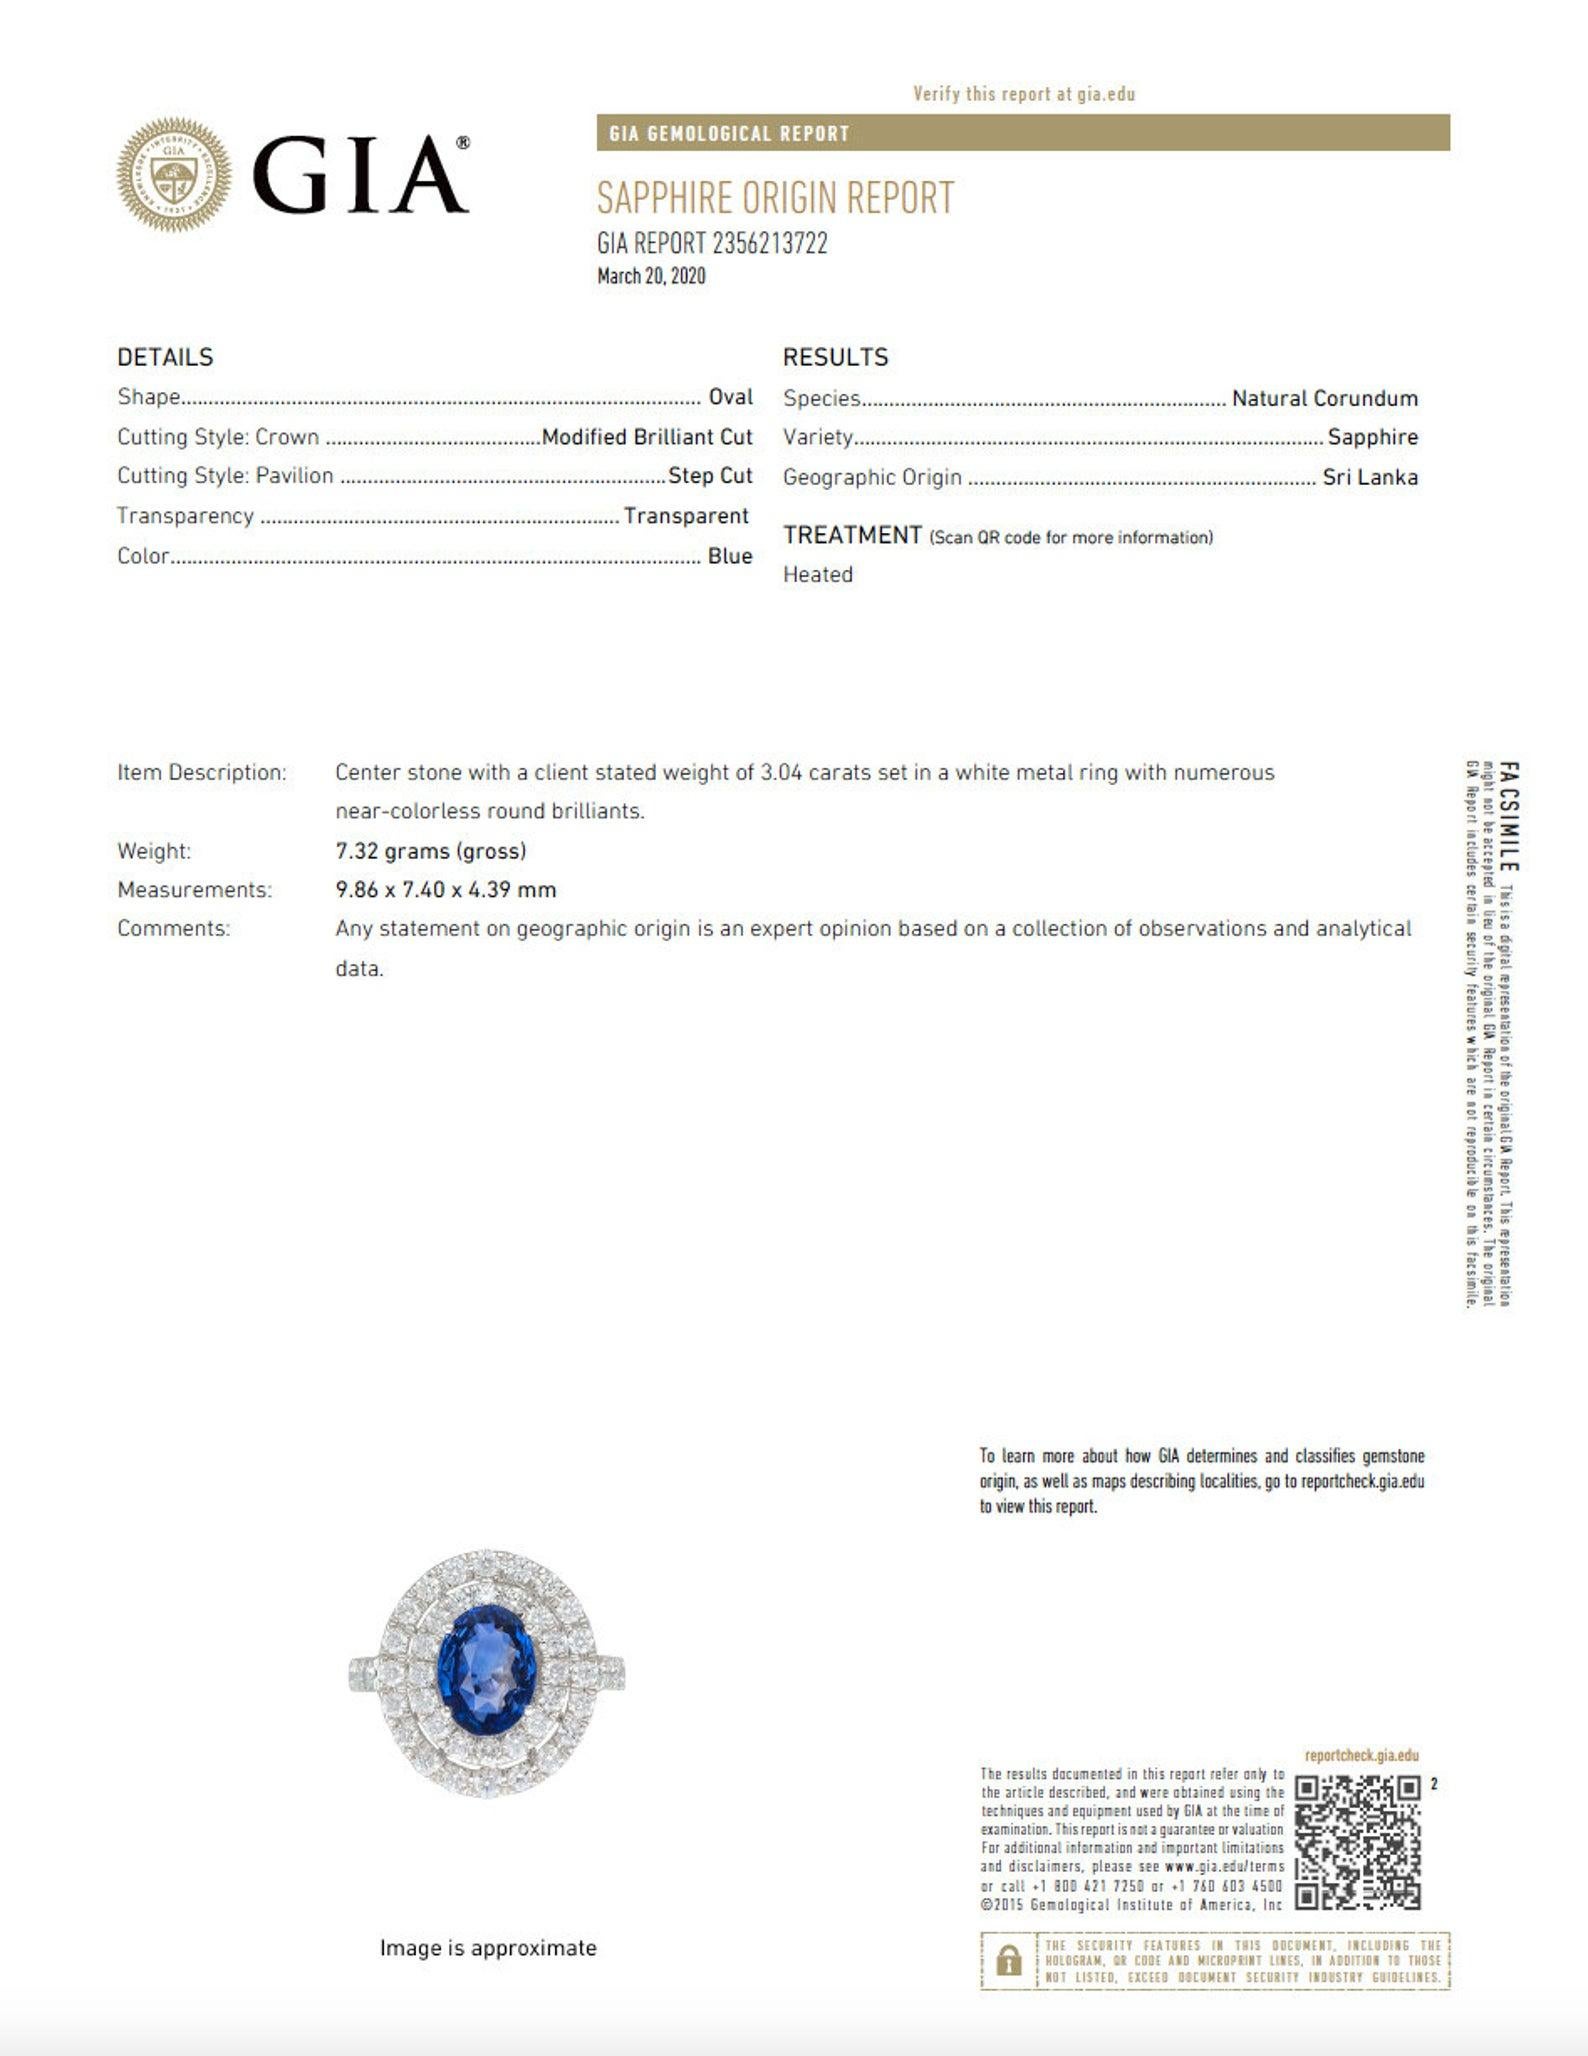 Produktspezifikationen:
- 3,04ct (9,86 x 7,40 x 4,39 mm) Blauer, natürlicher Saphir im Ovalschliff von hoher Qualität
Qualität: Königsblaue Farbe aus Sri Lanka
- GIA-Zertifikat im Lieferumfang enthalten: GIA# 2356213722
- 46 runde natürliche